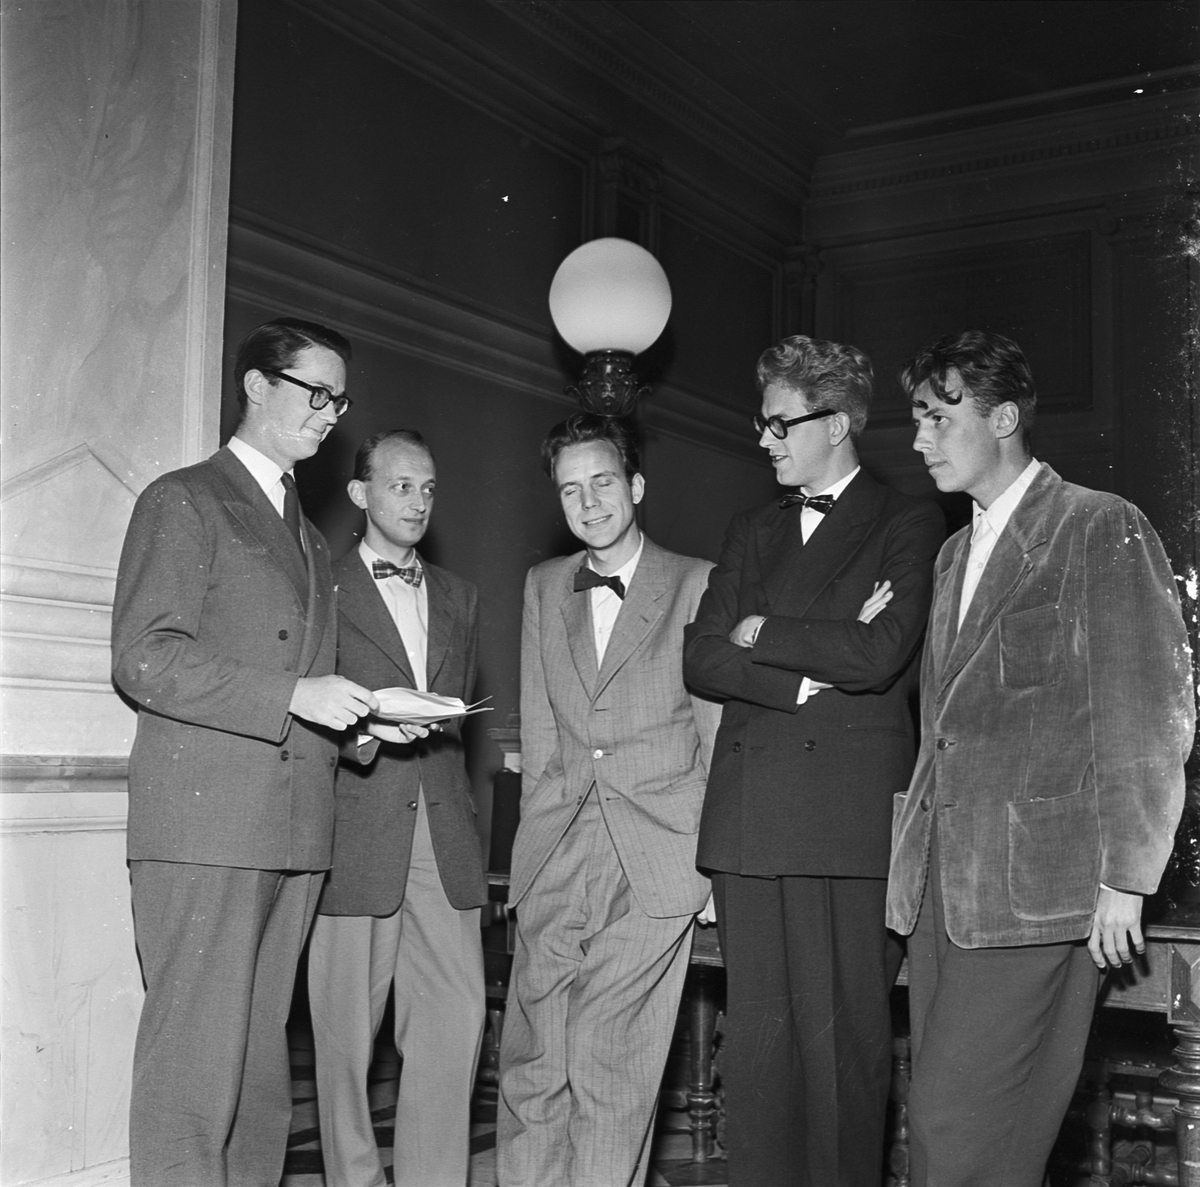 Studentdebatt, politisk debatt på Norrlands nation, Uppsala 1956